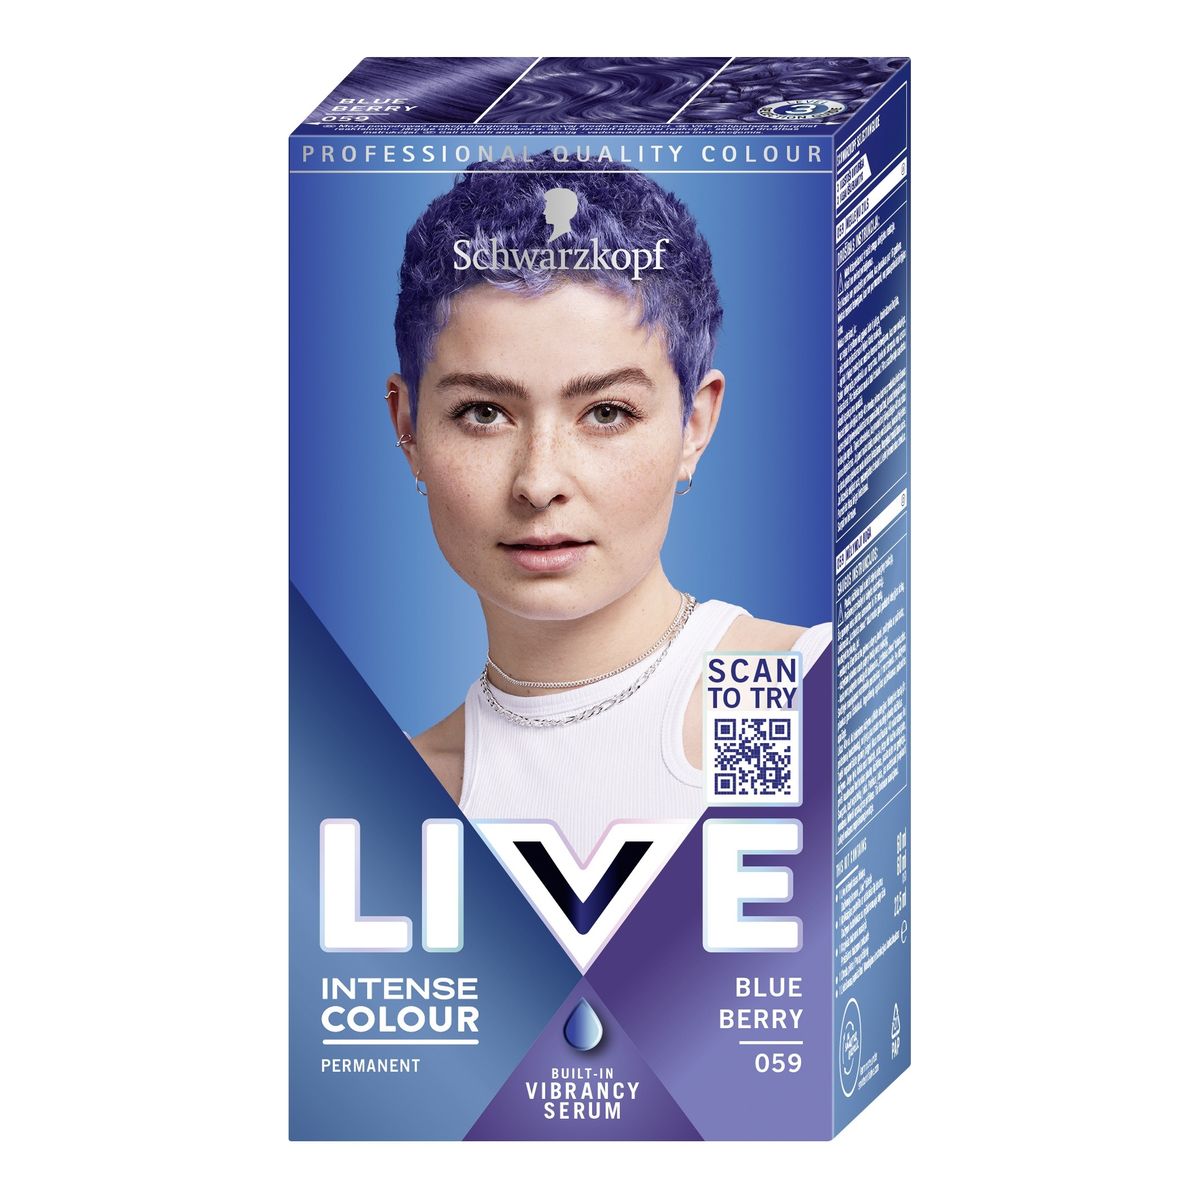 Schwarzkopf Live blue berry farba do włosów 059